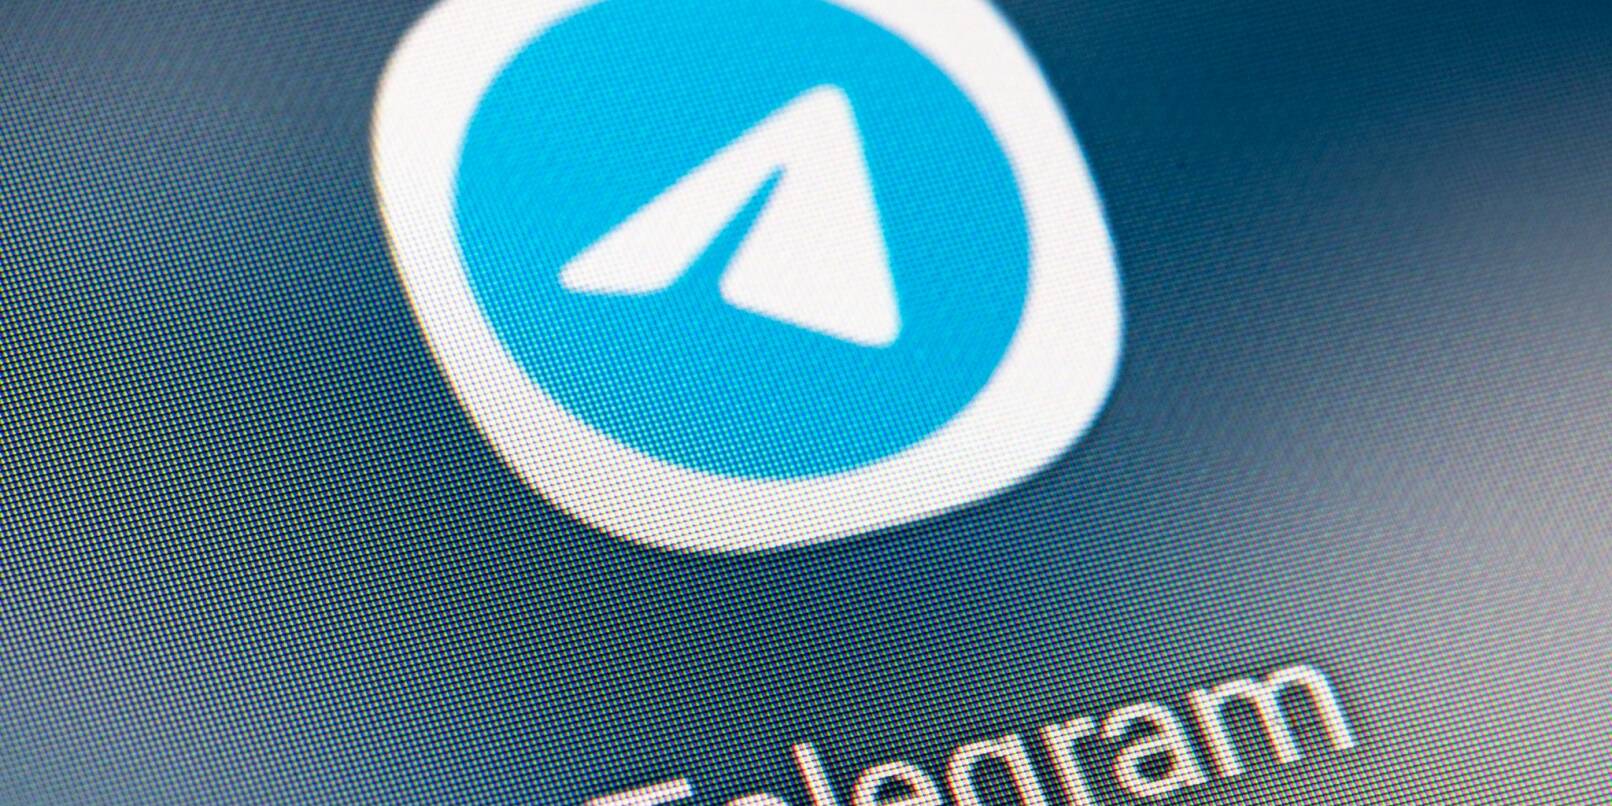 Vorübergehend landesweit in Brasilien gesperrt: die Nachrichten-App Telegram.